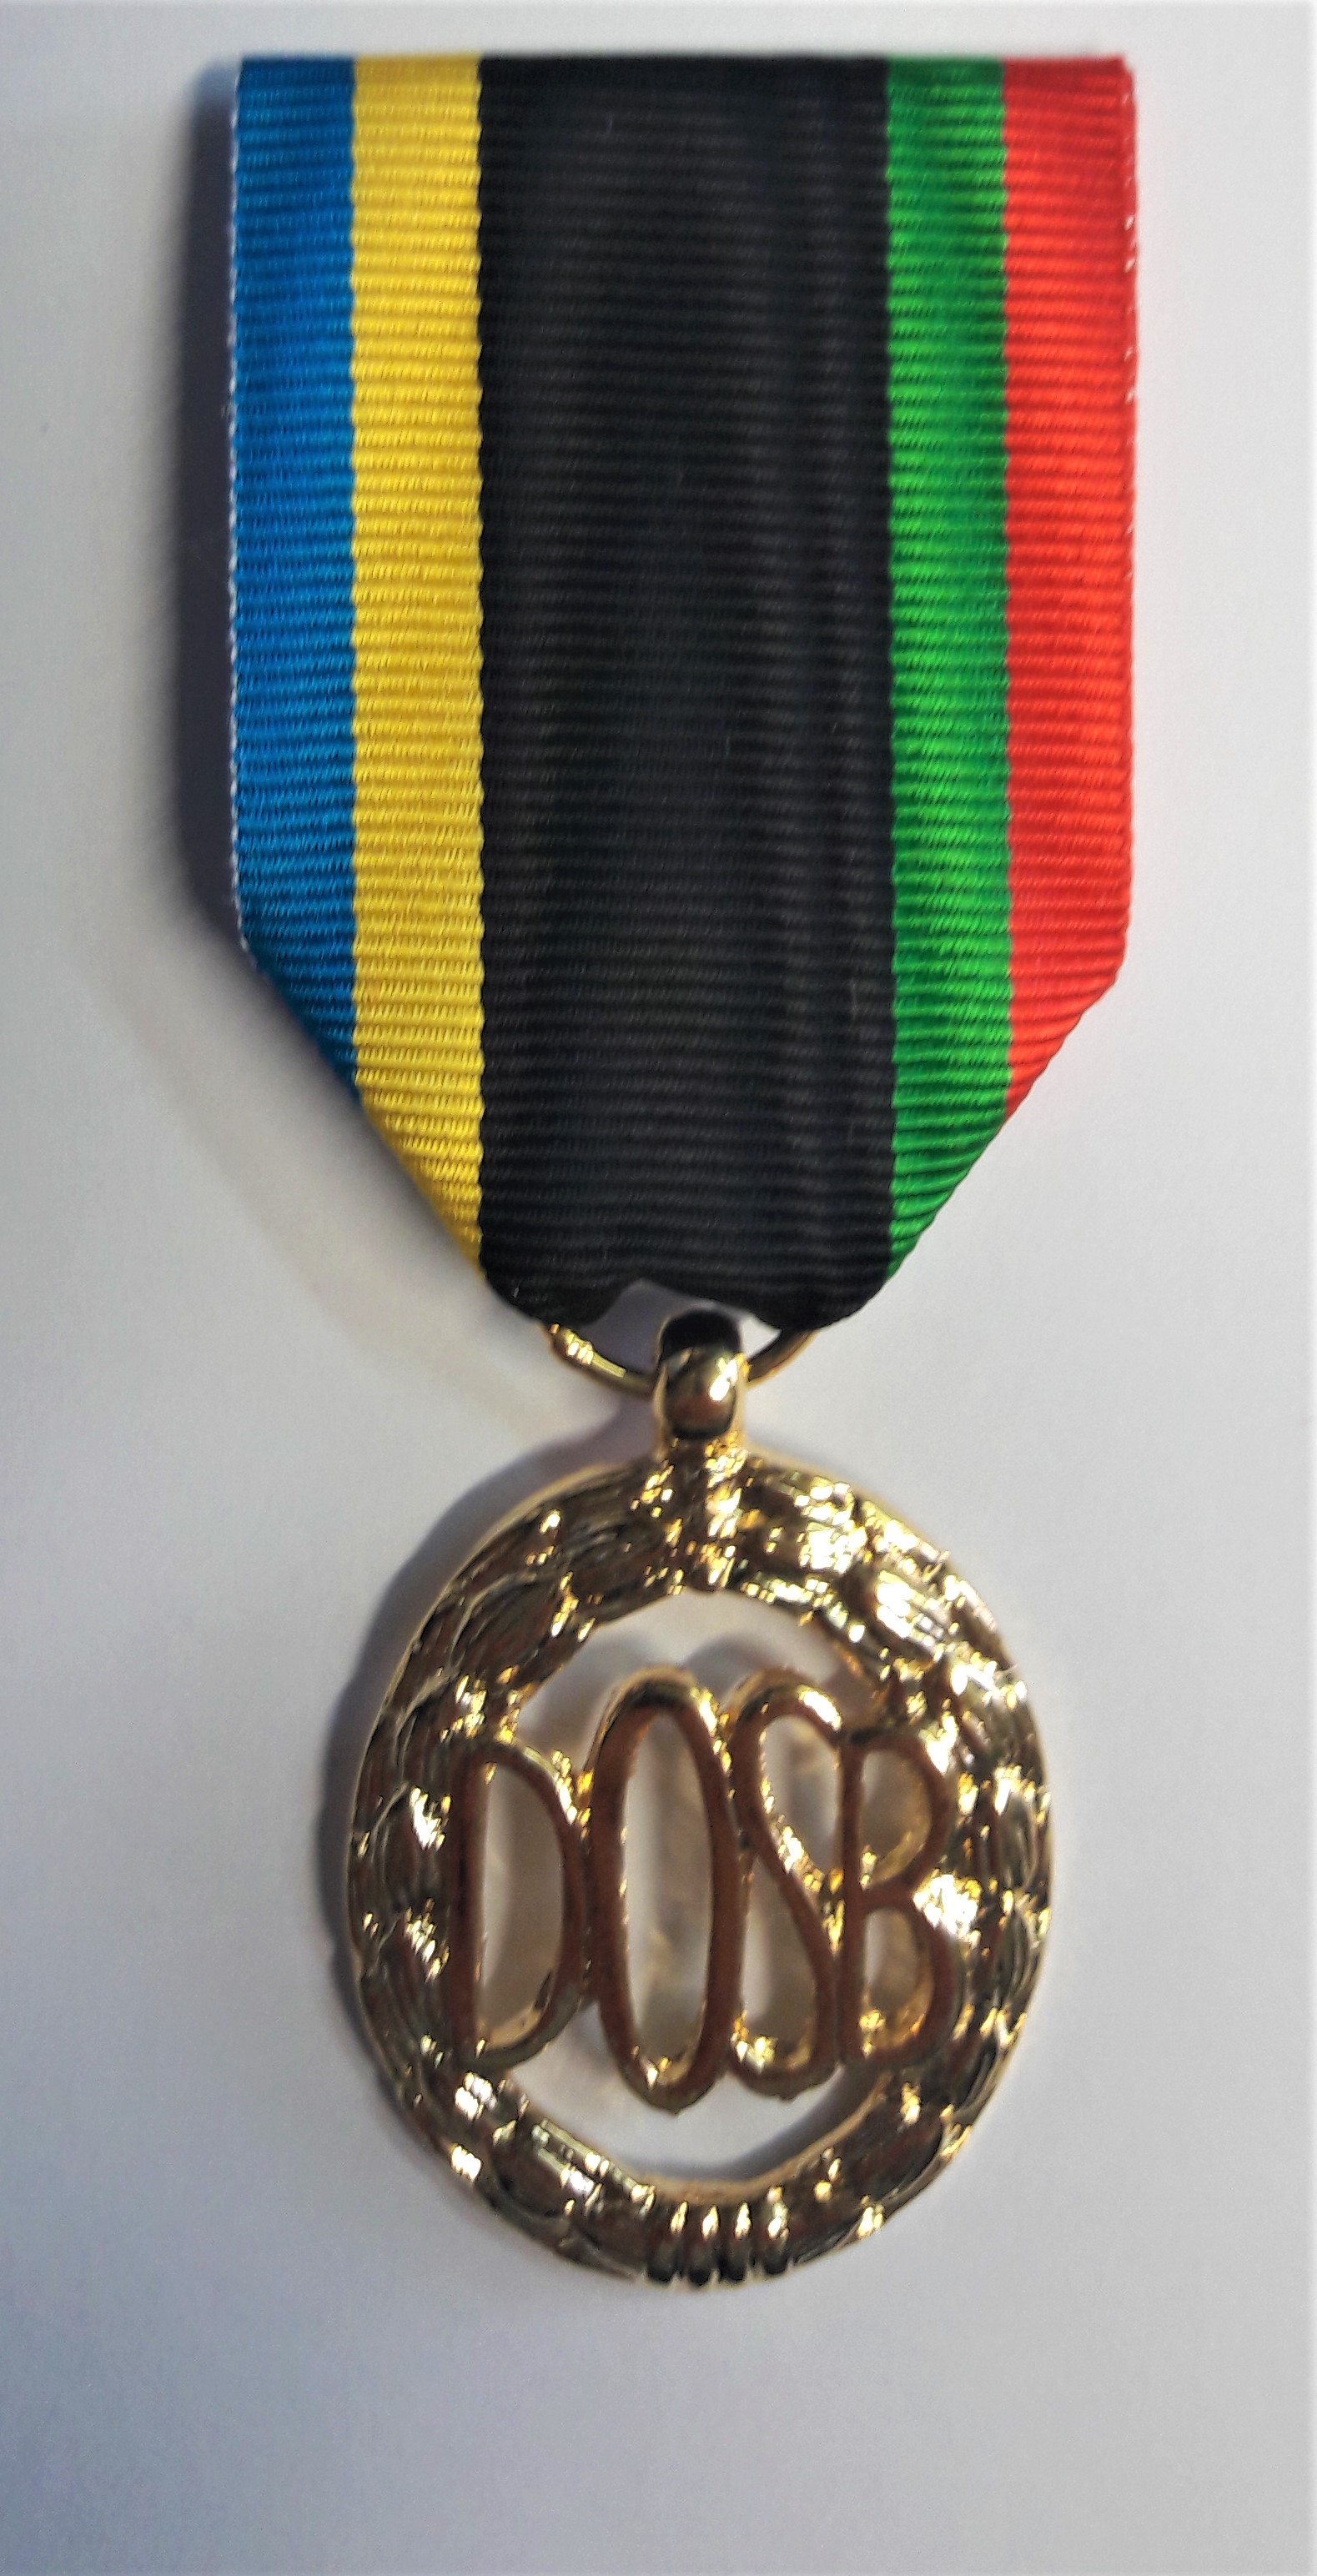 Médaille Sport Allemand Or 110157 : Au col bleu